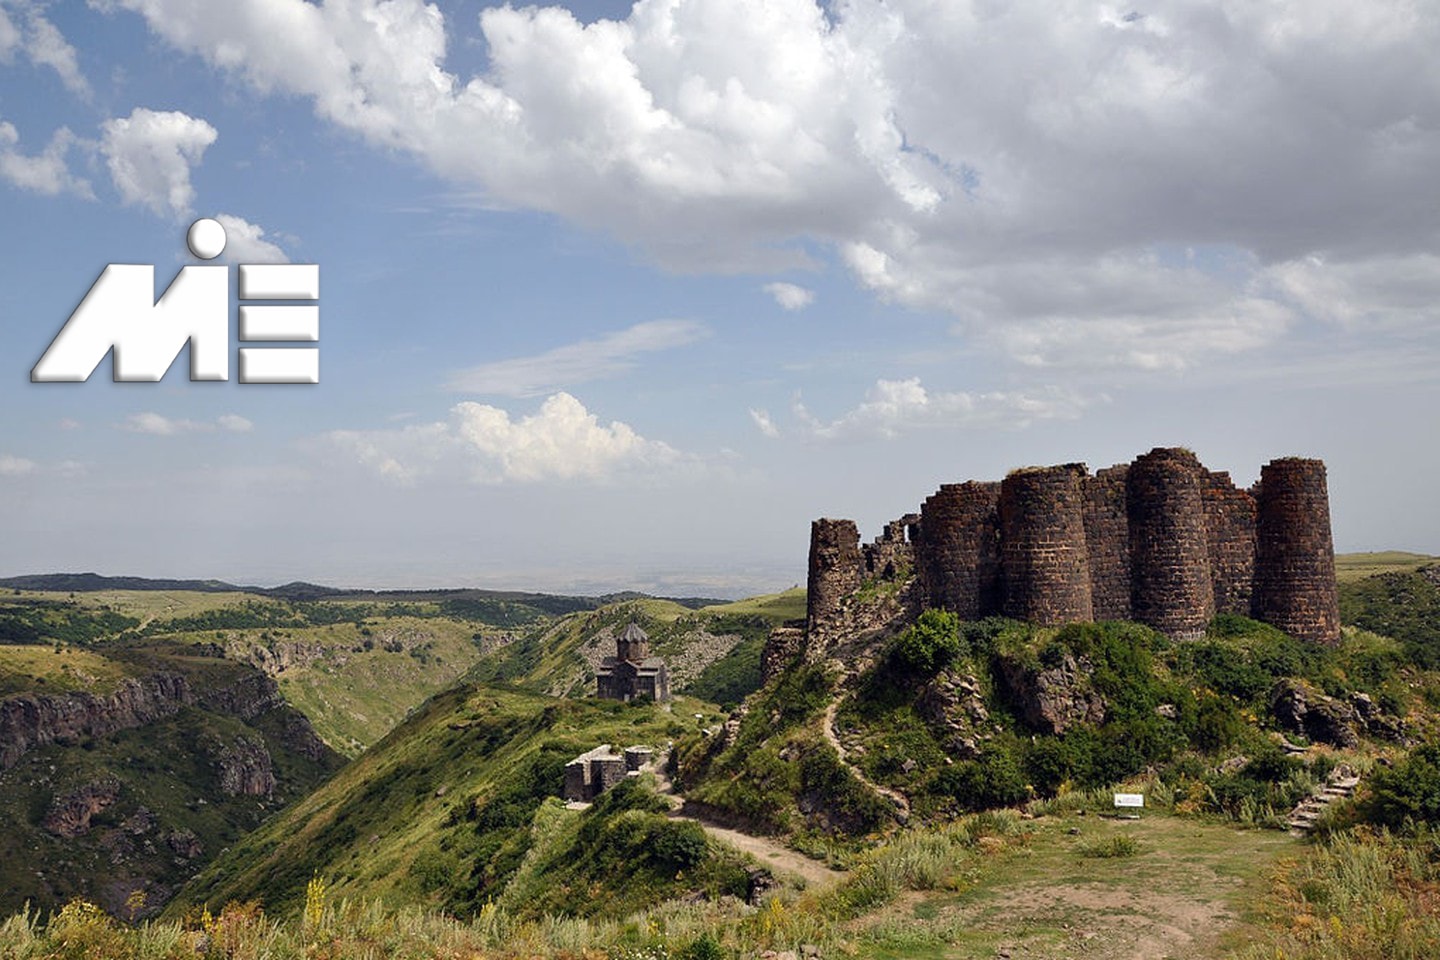 قلعه عنبر در ارمنستان | جاذبه های گردشگری ارمنستان | ویزای توریستی ارمنستان